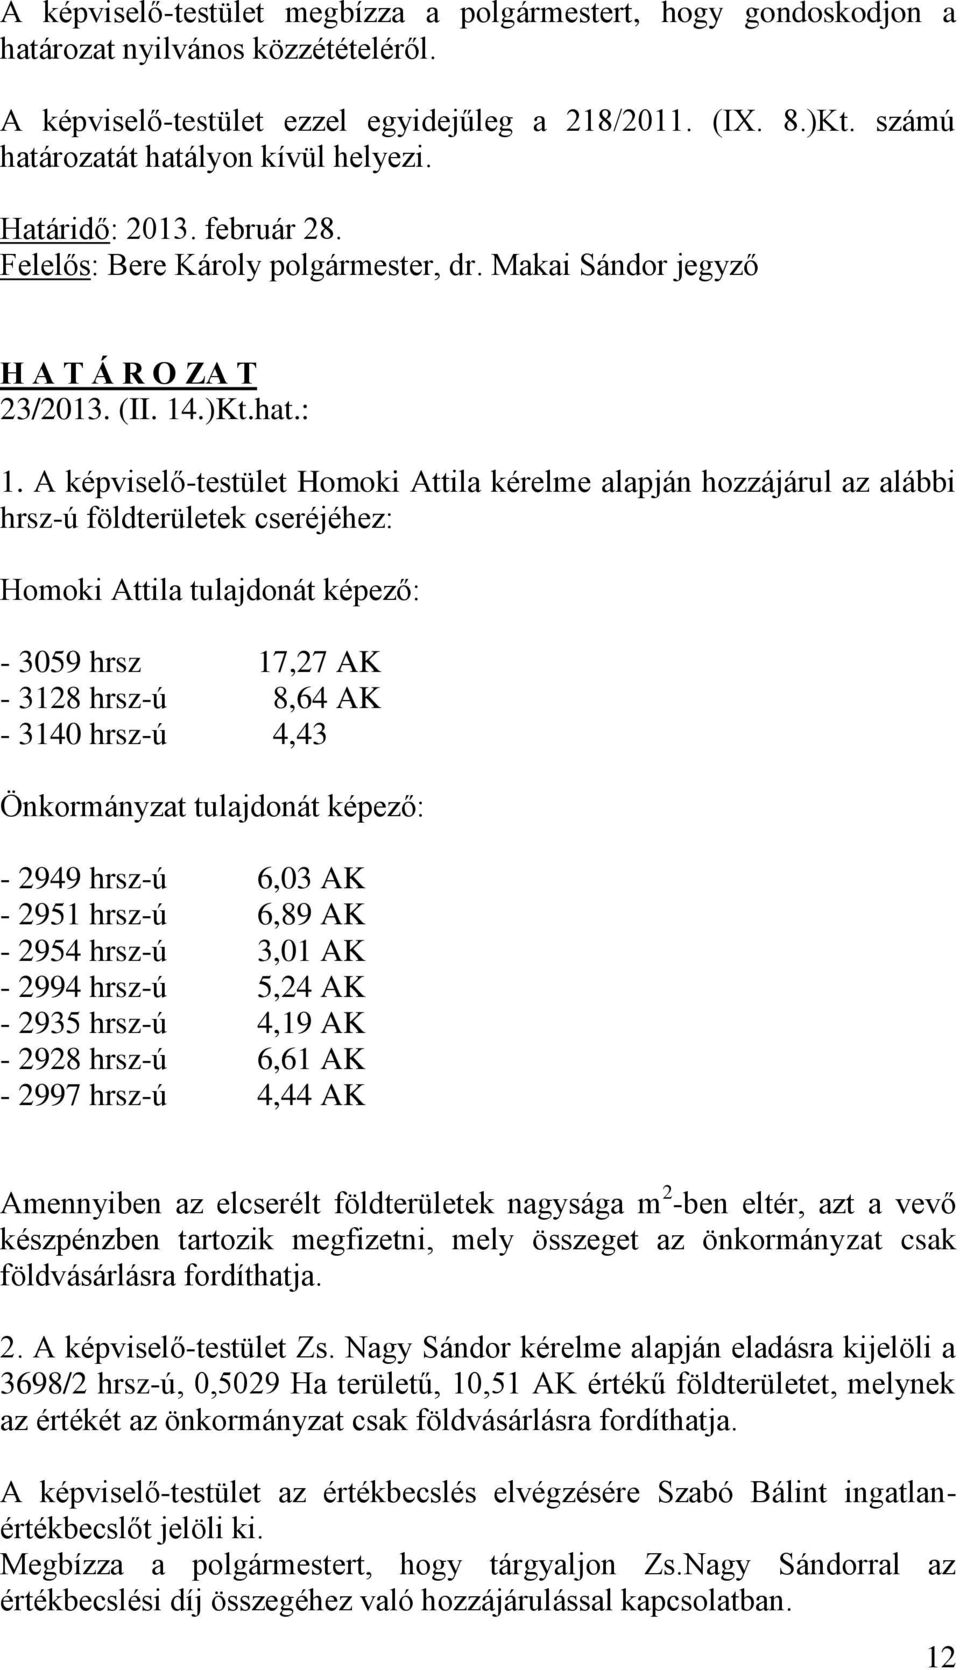 A képviselő-testület Homoki Attila kérelme alapján hozzájárul az alábbi hrsz-ú földterületek cseréjéhez: Homoki Attila tulajdonát képező: - 3059 hrsz 17,27 AK - 3128 hrsz-ú 8,64 AK - 3140 hrsz-ú 4,43